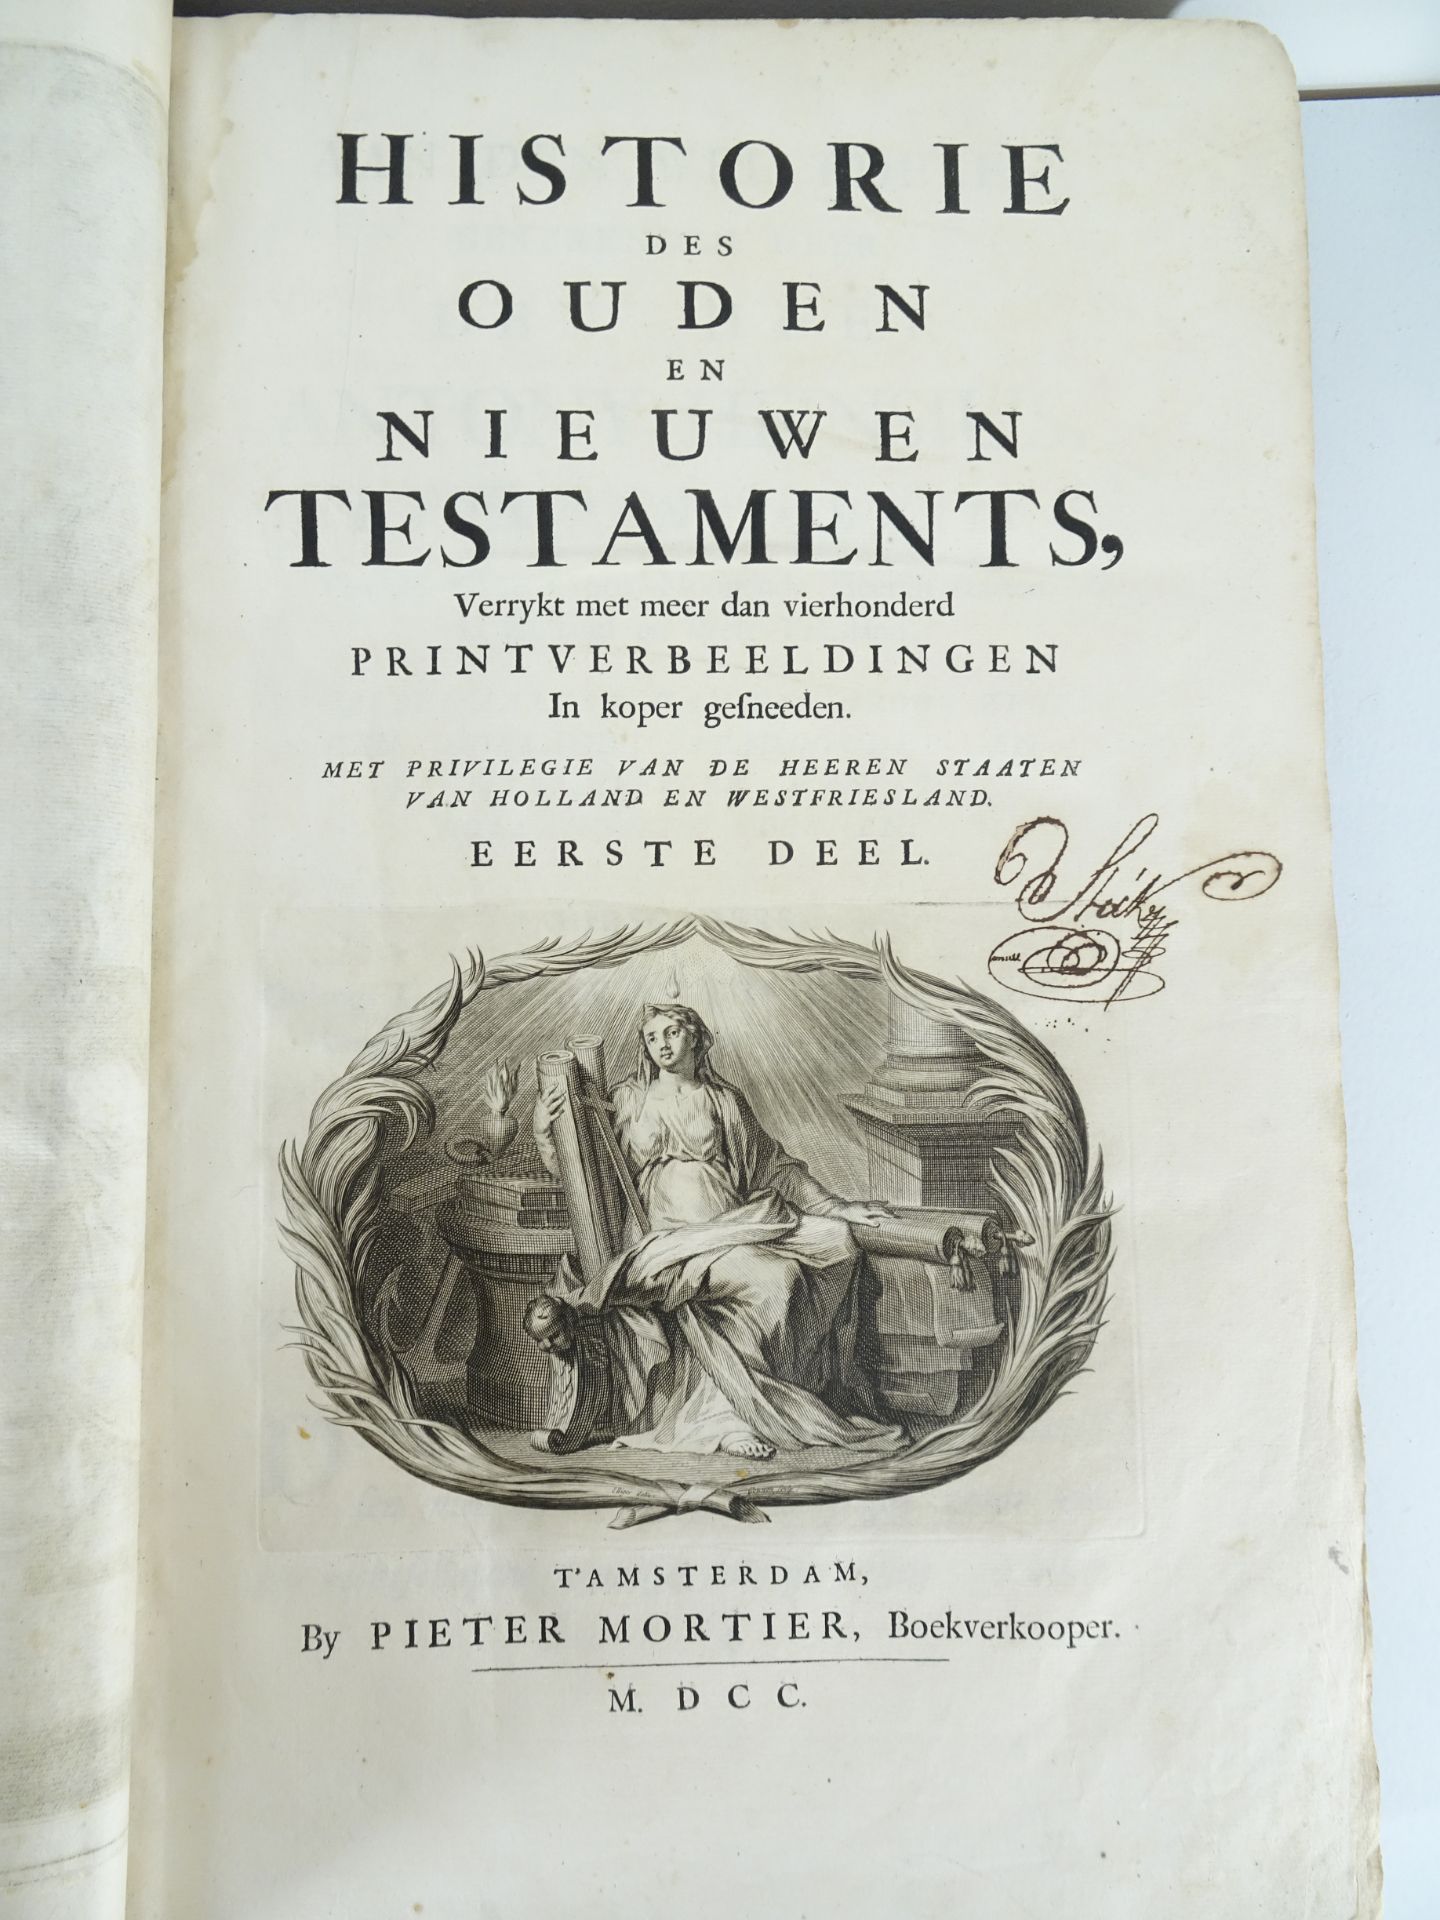 |Bible| Mortier Pieter, "Historie des Ouden en Nieuwen Testaments…", 1700